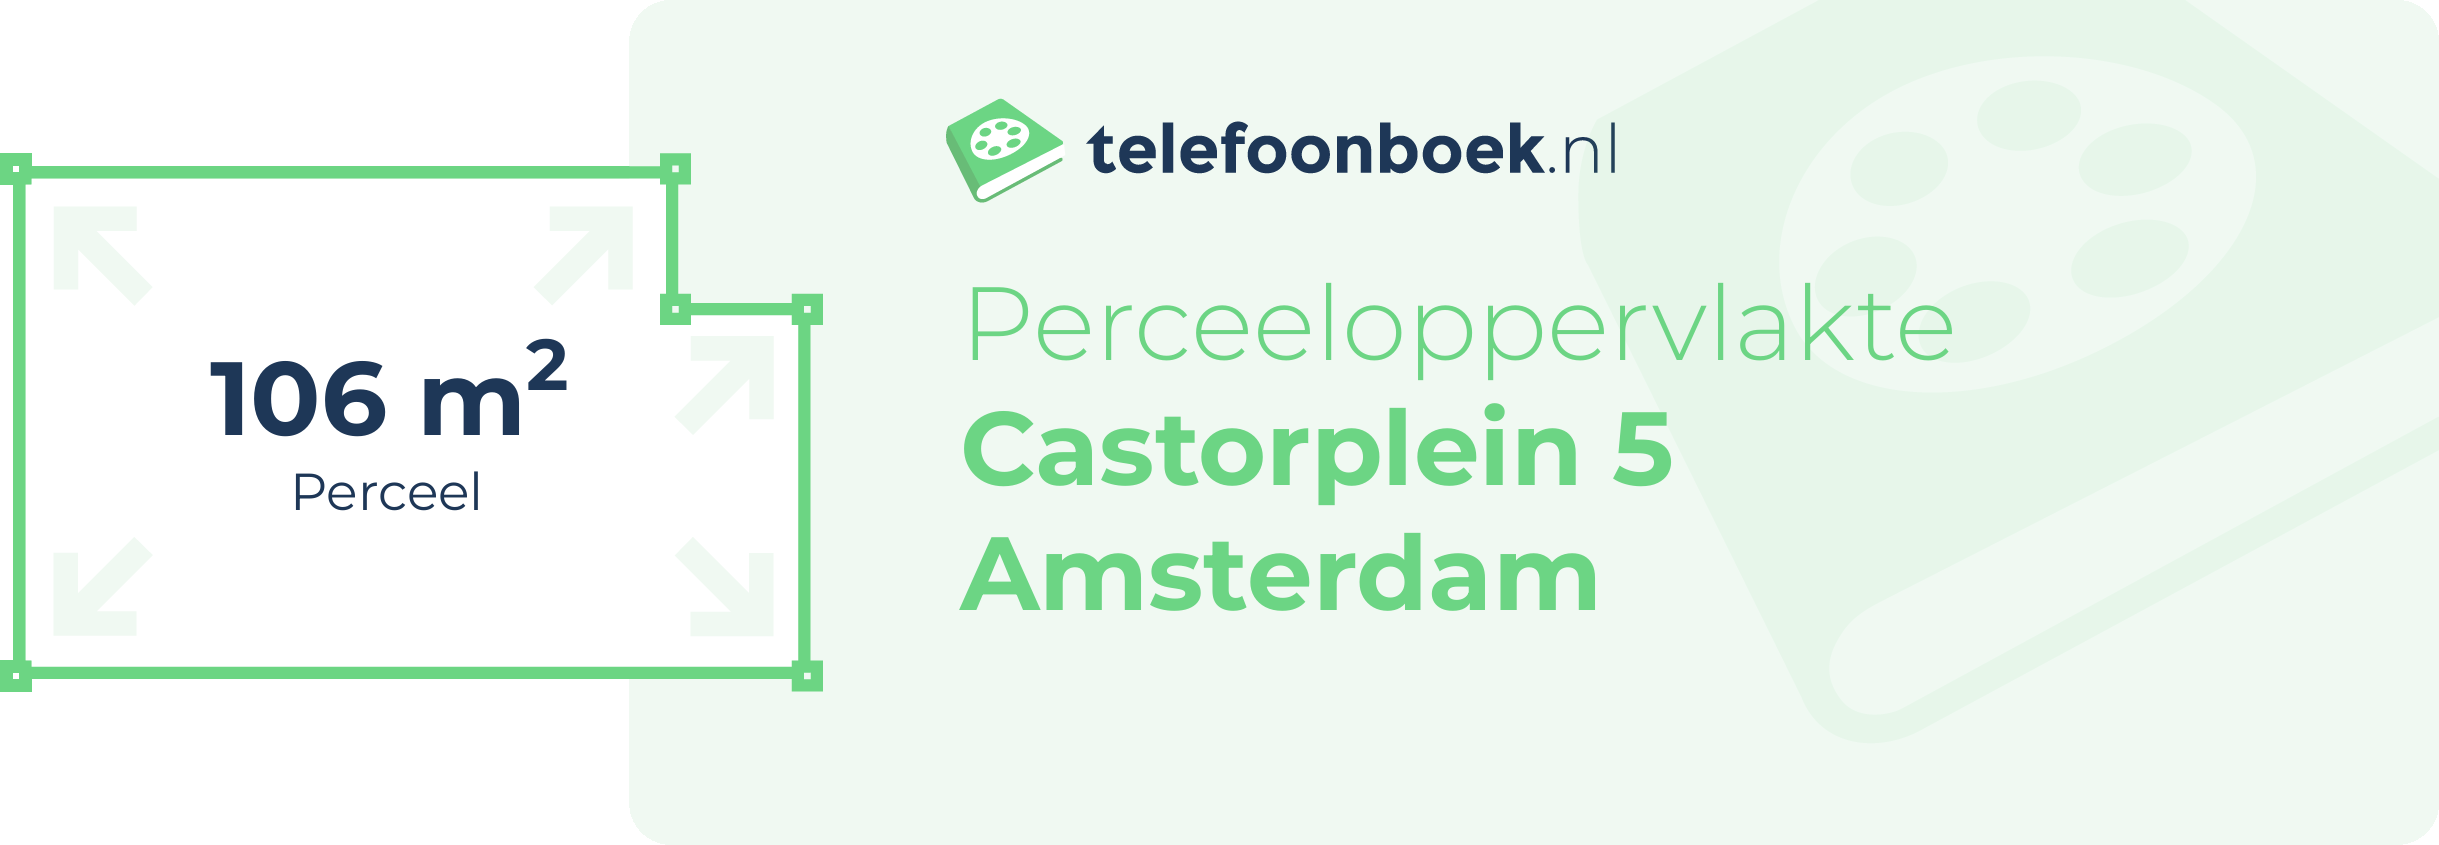 Perceeloppervlakte Castorplein 5 Amsterdam